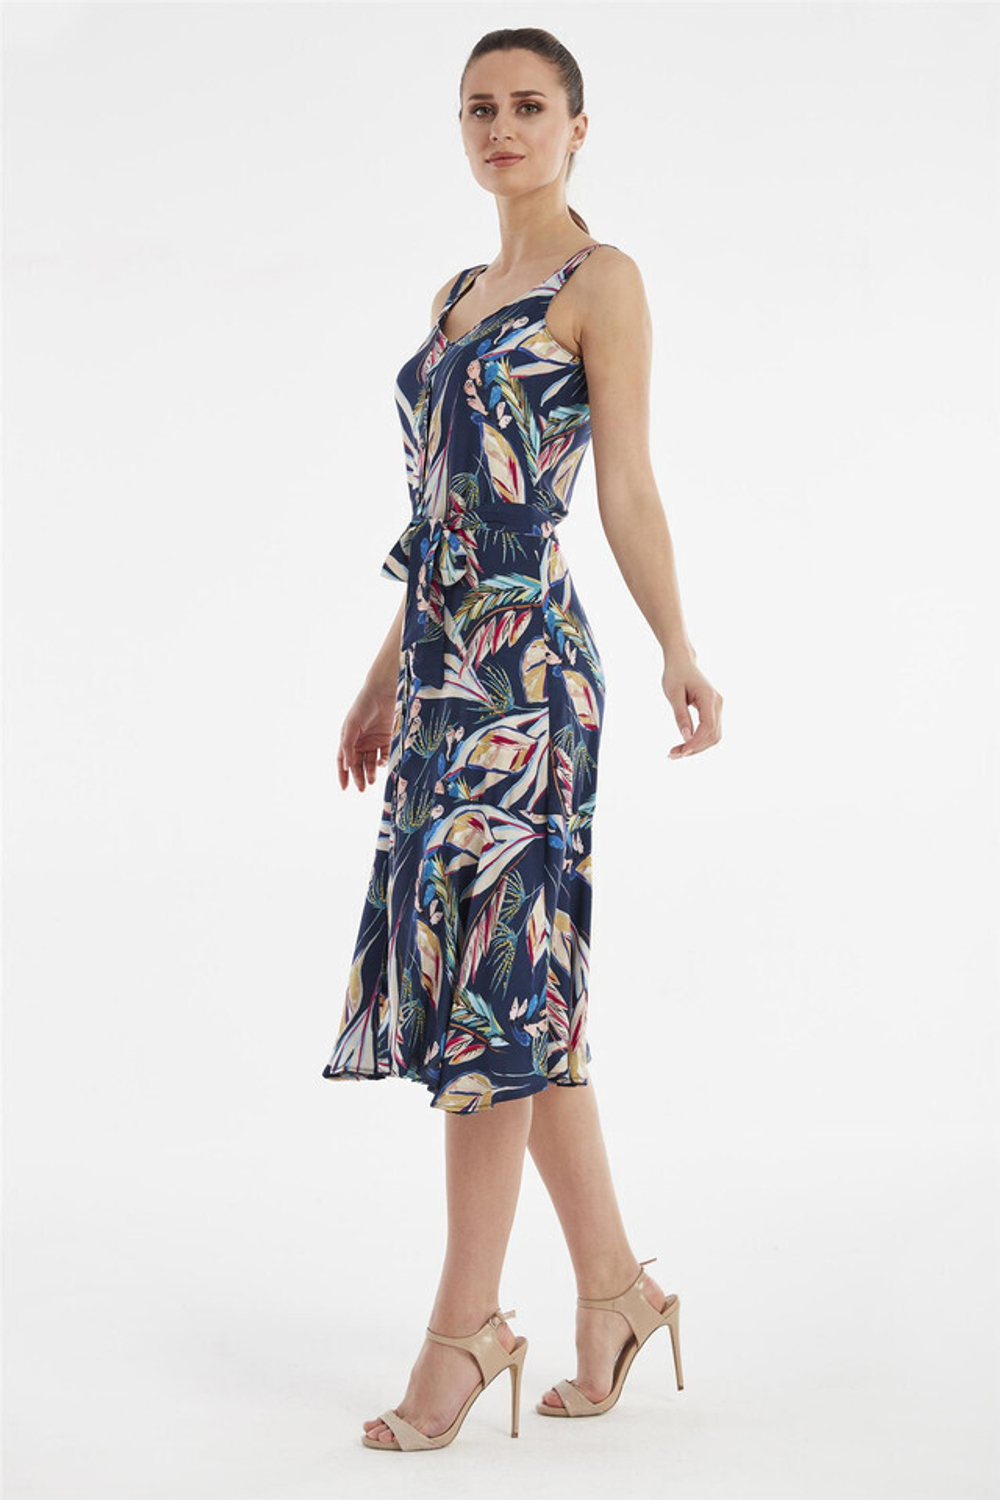 RELAX MODE / Платье женское летнее повседневное на пуговицах вискоза - 45414